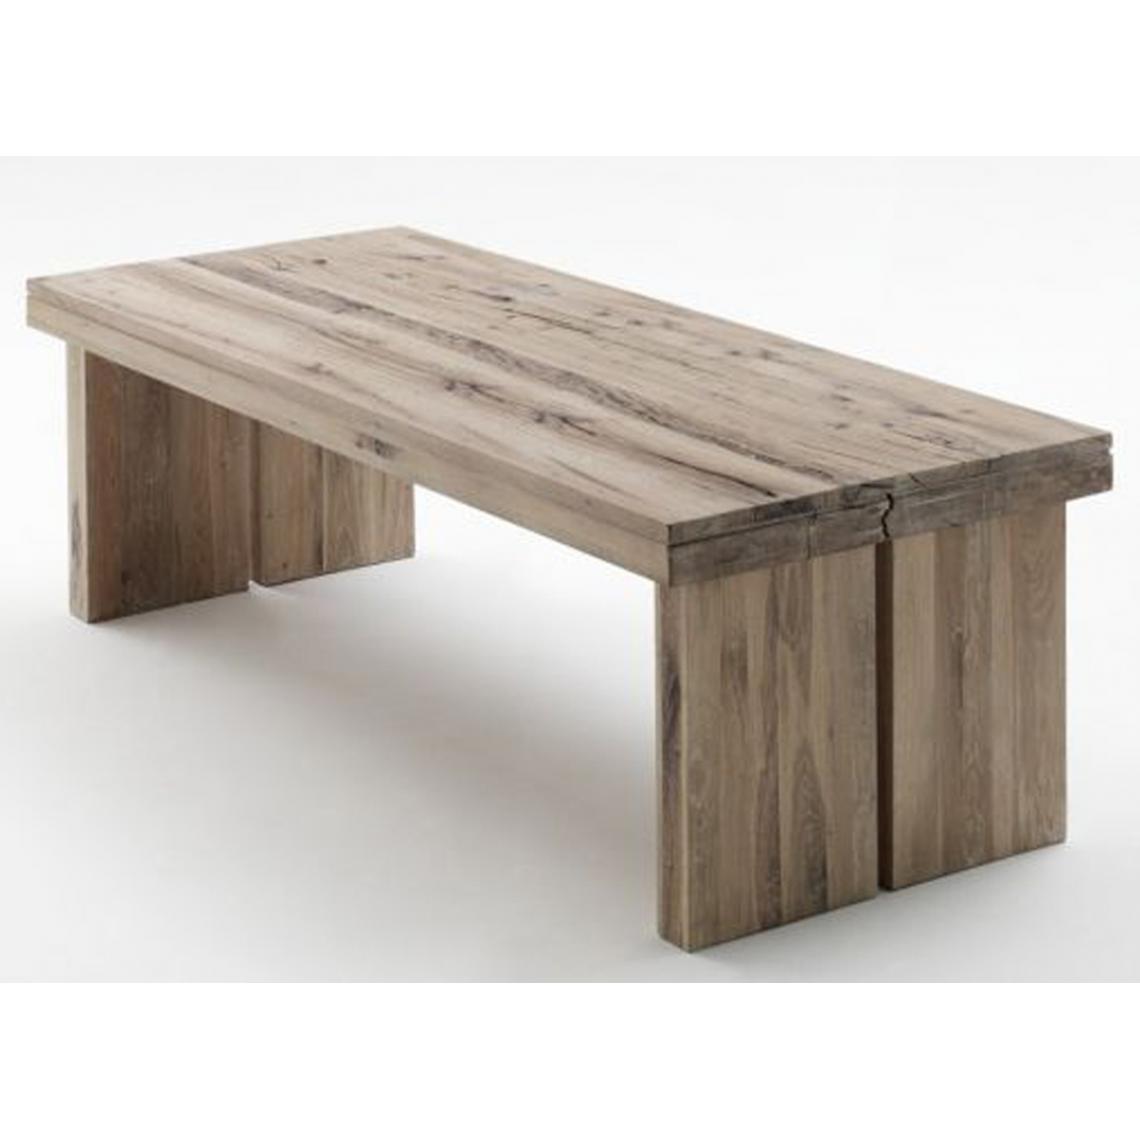 Pegane - Table à manger rectangulaire en chêne chaulé laqué - L.220 x H.76 x P.100 cm - Tables à manger